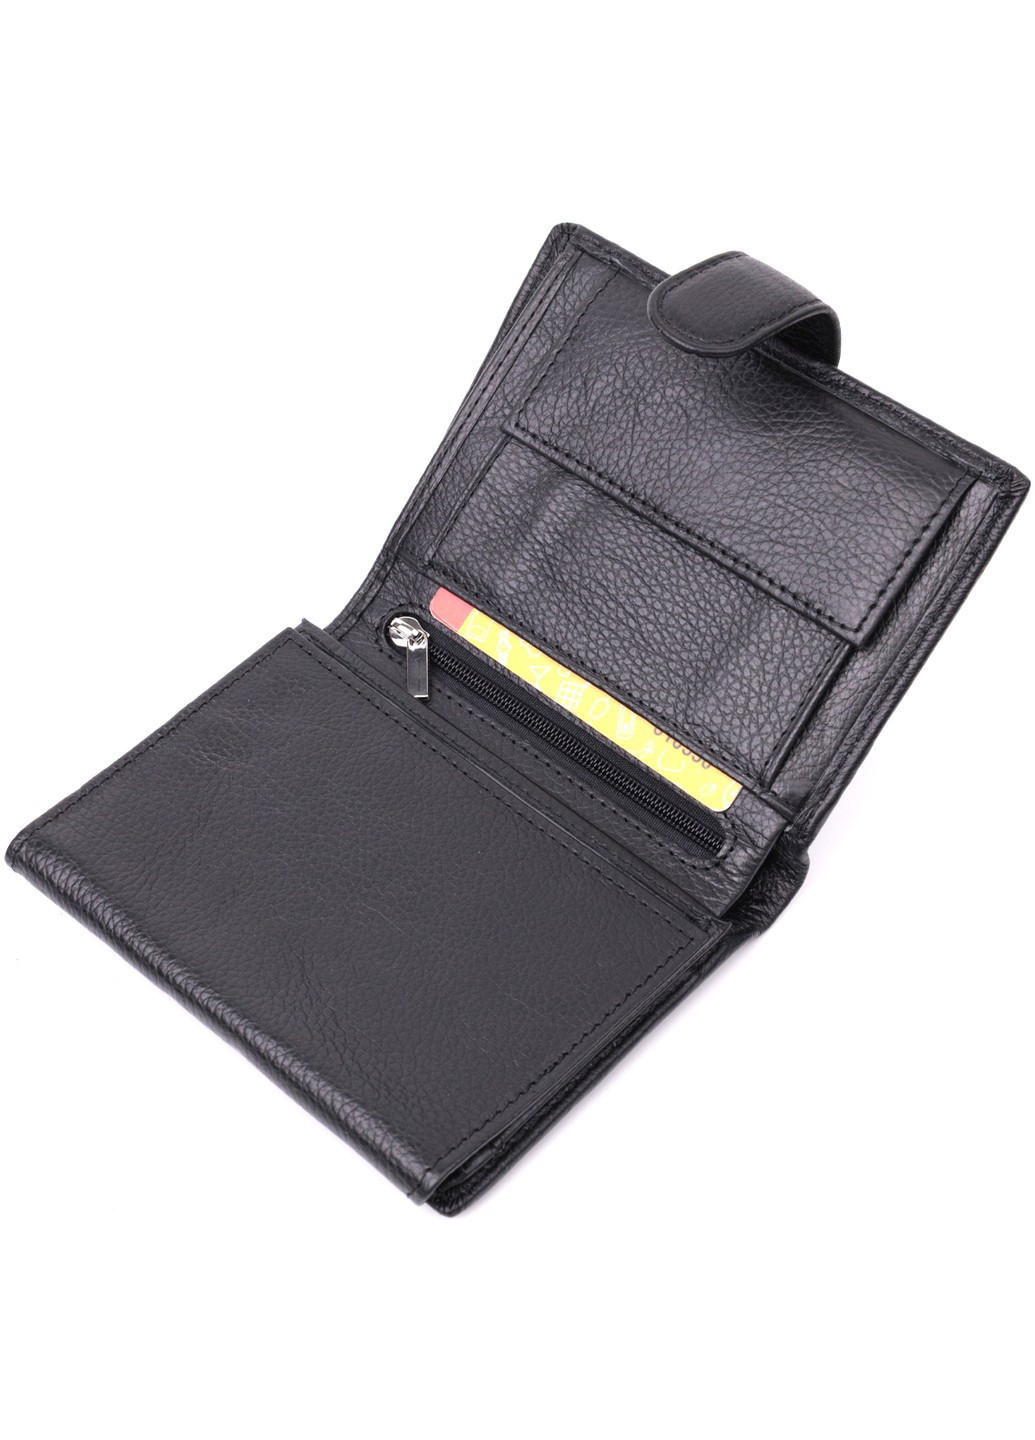 Солидный мужской бумажник вертикального формата из натуральной кожи 22462 Черный st leather (278000973)